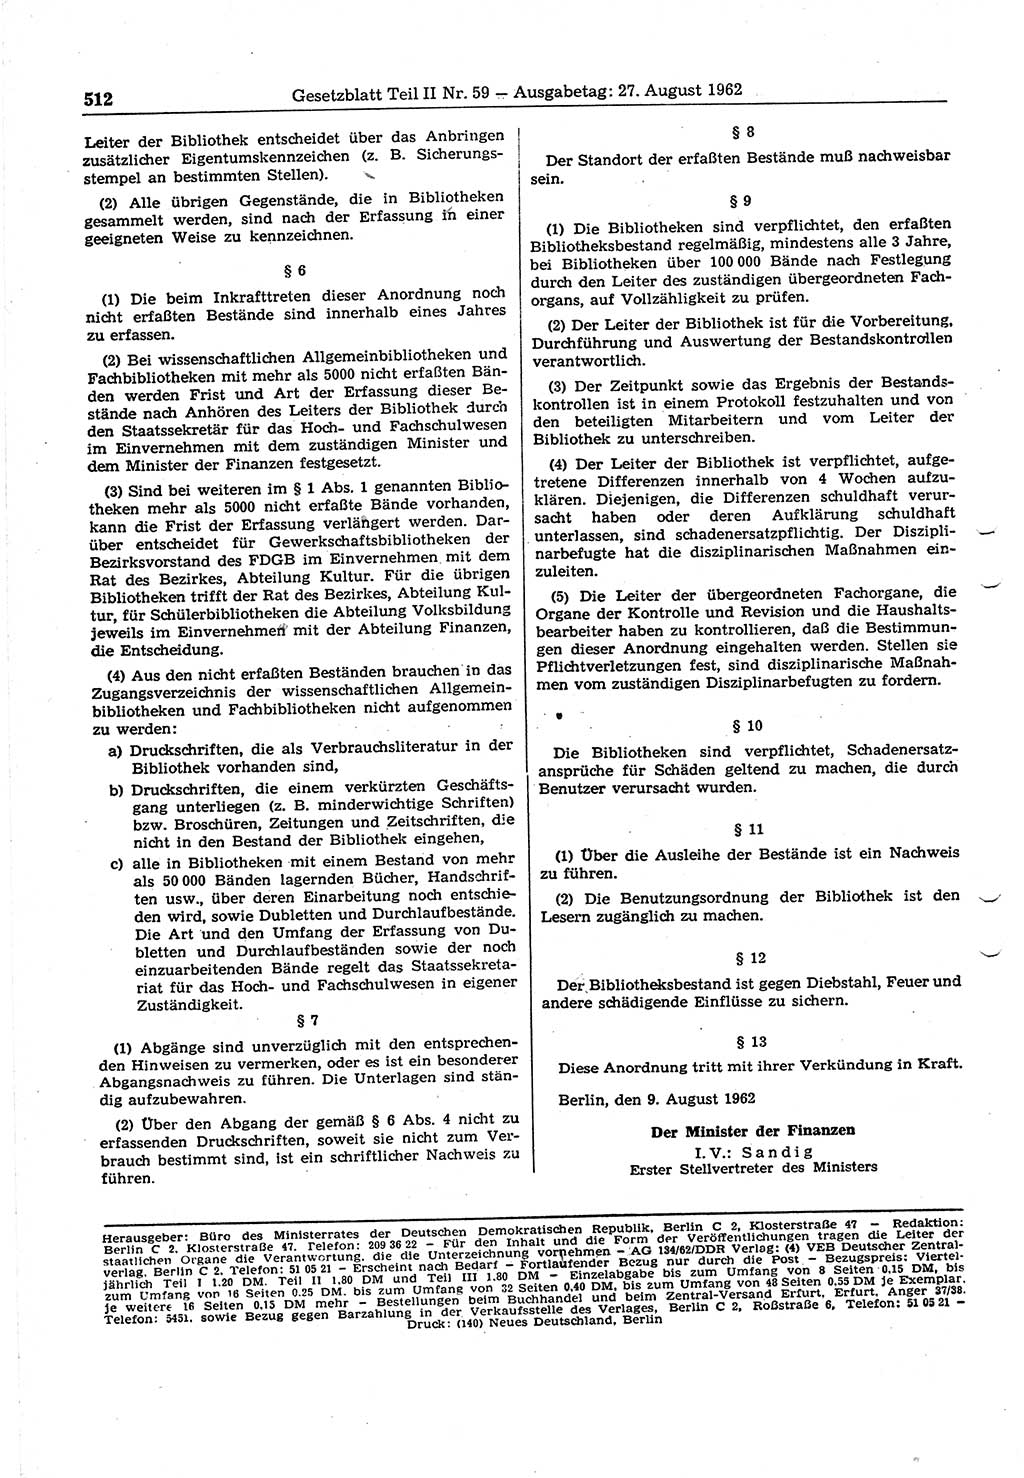 Gesetzblatt (GBl.) der Deutschen Demokratischen Republik (DDR) Teil ⅠⅠ 1962, Seite 512 (GBl. DDR ⅠⅠ 1962, S. 512)